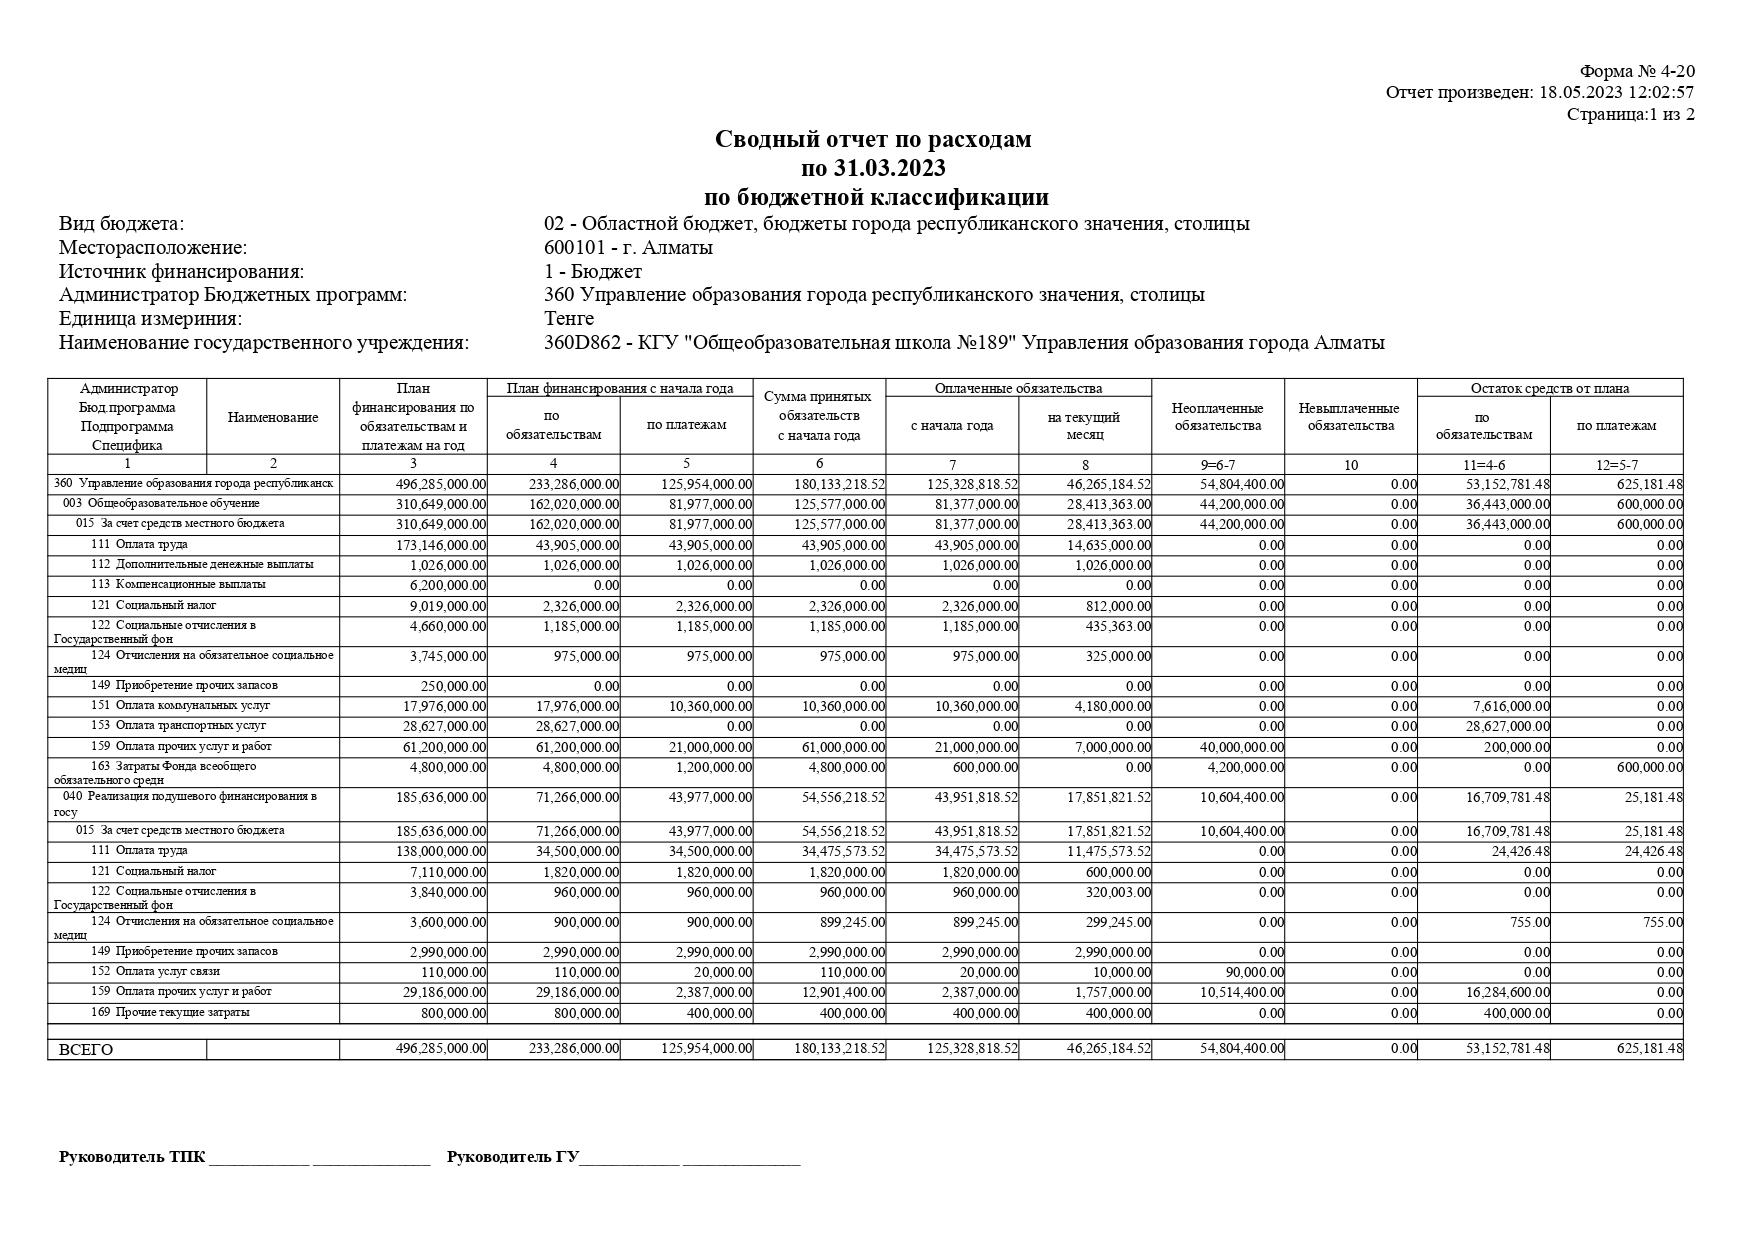 Сводный отчет по расходам по 31.03.2022